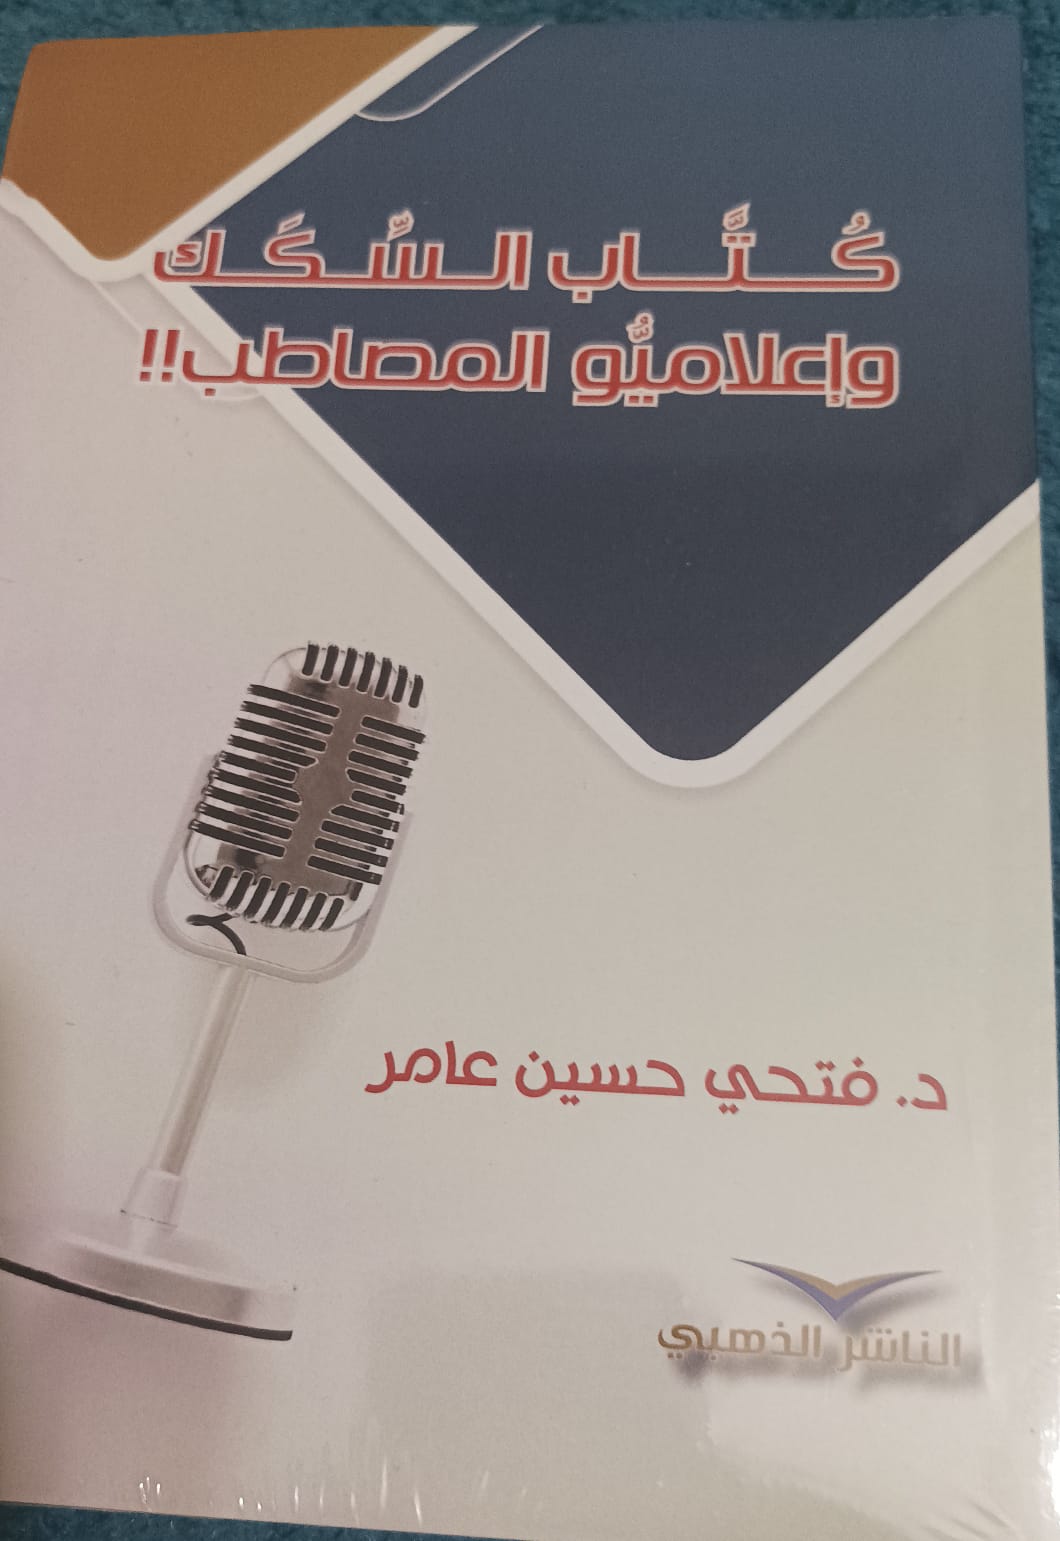 كتاب السكك واعلاميو المصاطب في إصدار جديد للزميل الدكتور فتحي حسين عامر عن إعلاميو المصاطب